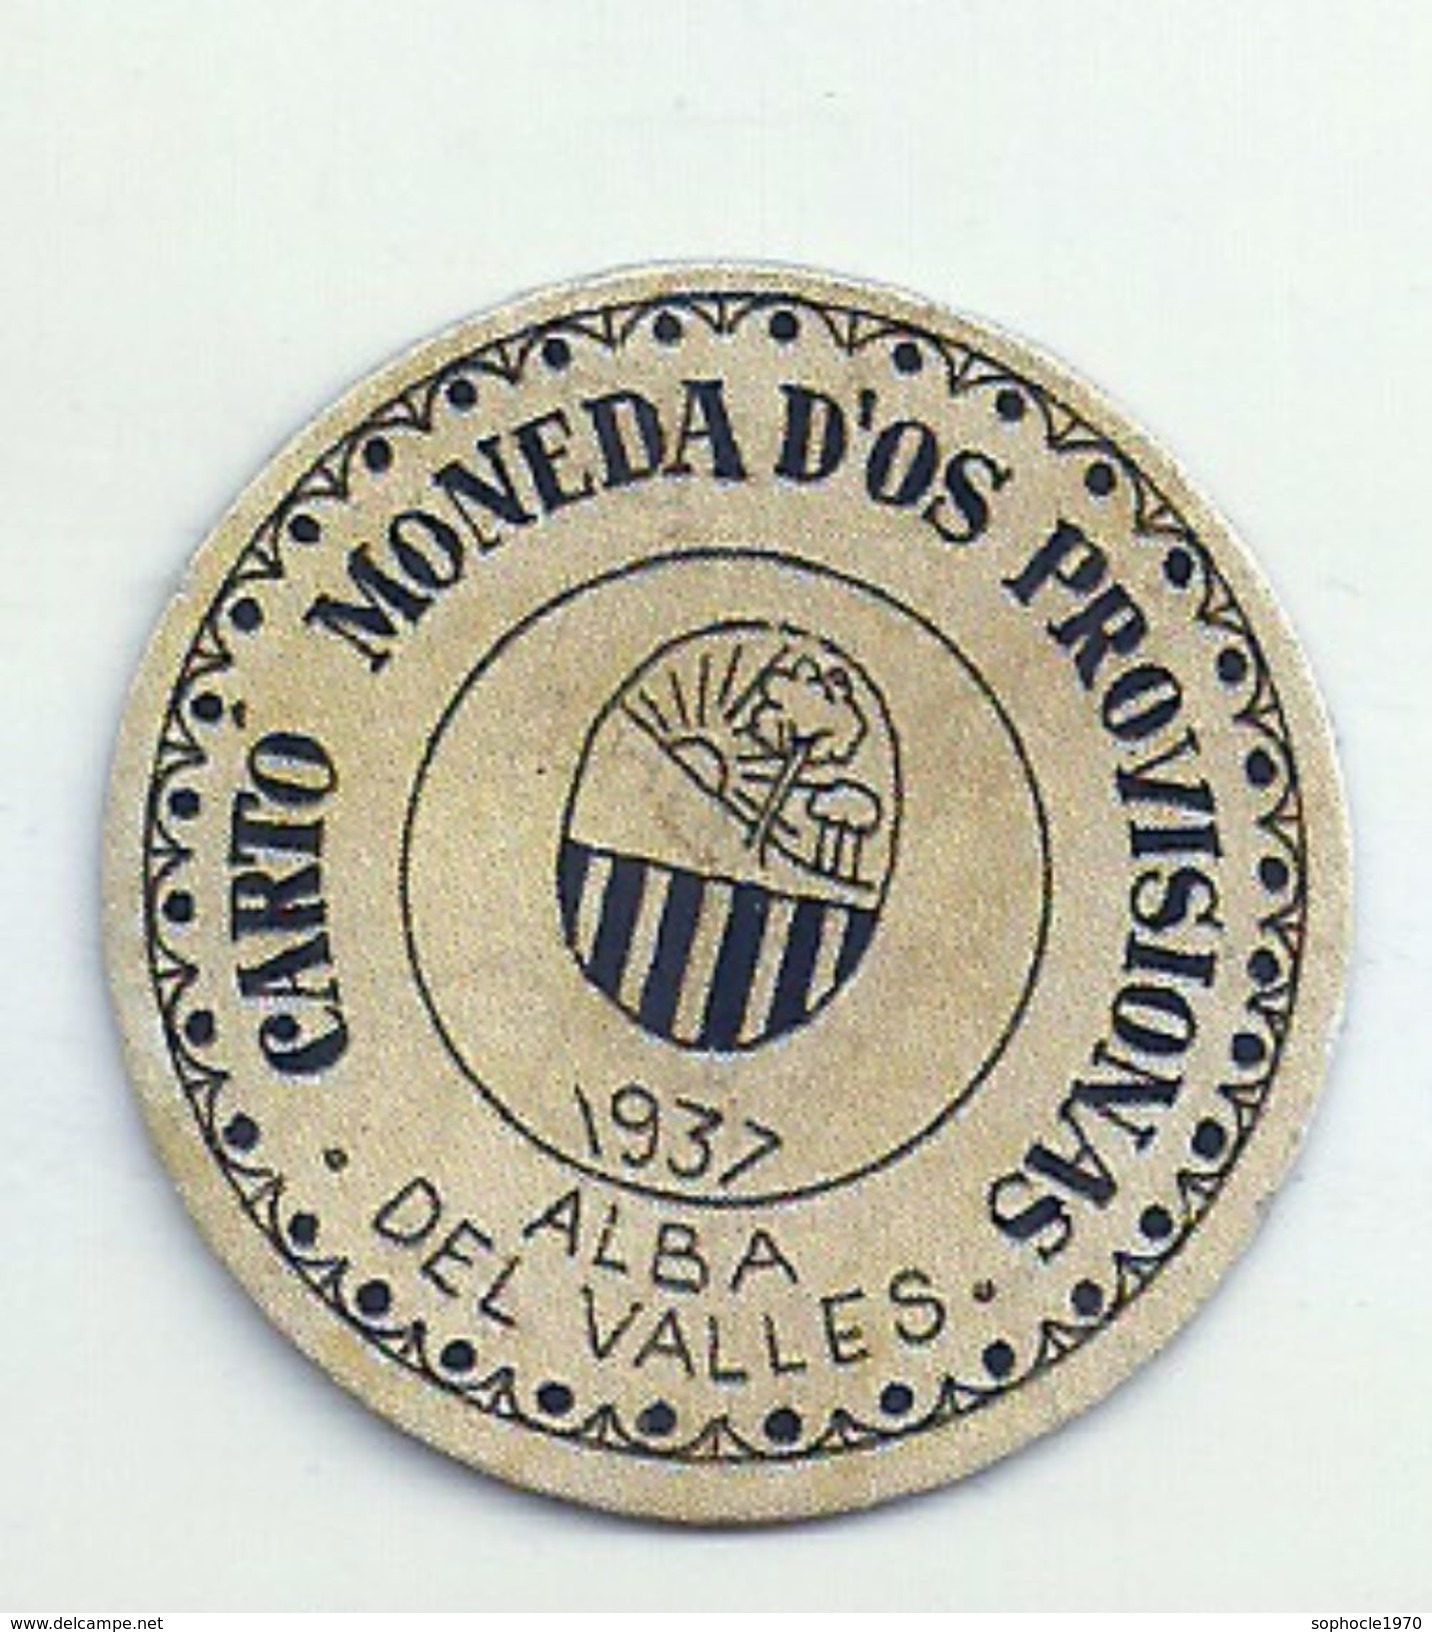 ESPAGNE - 1937 - République Espagnole  BARCELONE- ALBA DEL VALLES  Monéd D'Os Provisionas - Monnaie Carton Timbre -  Necessity Money